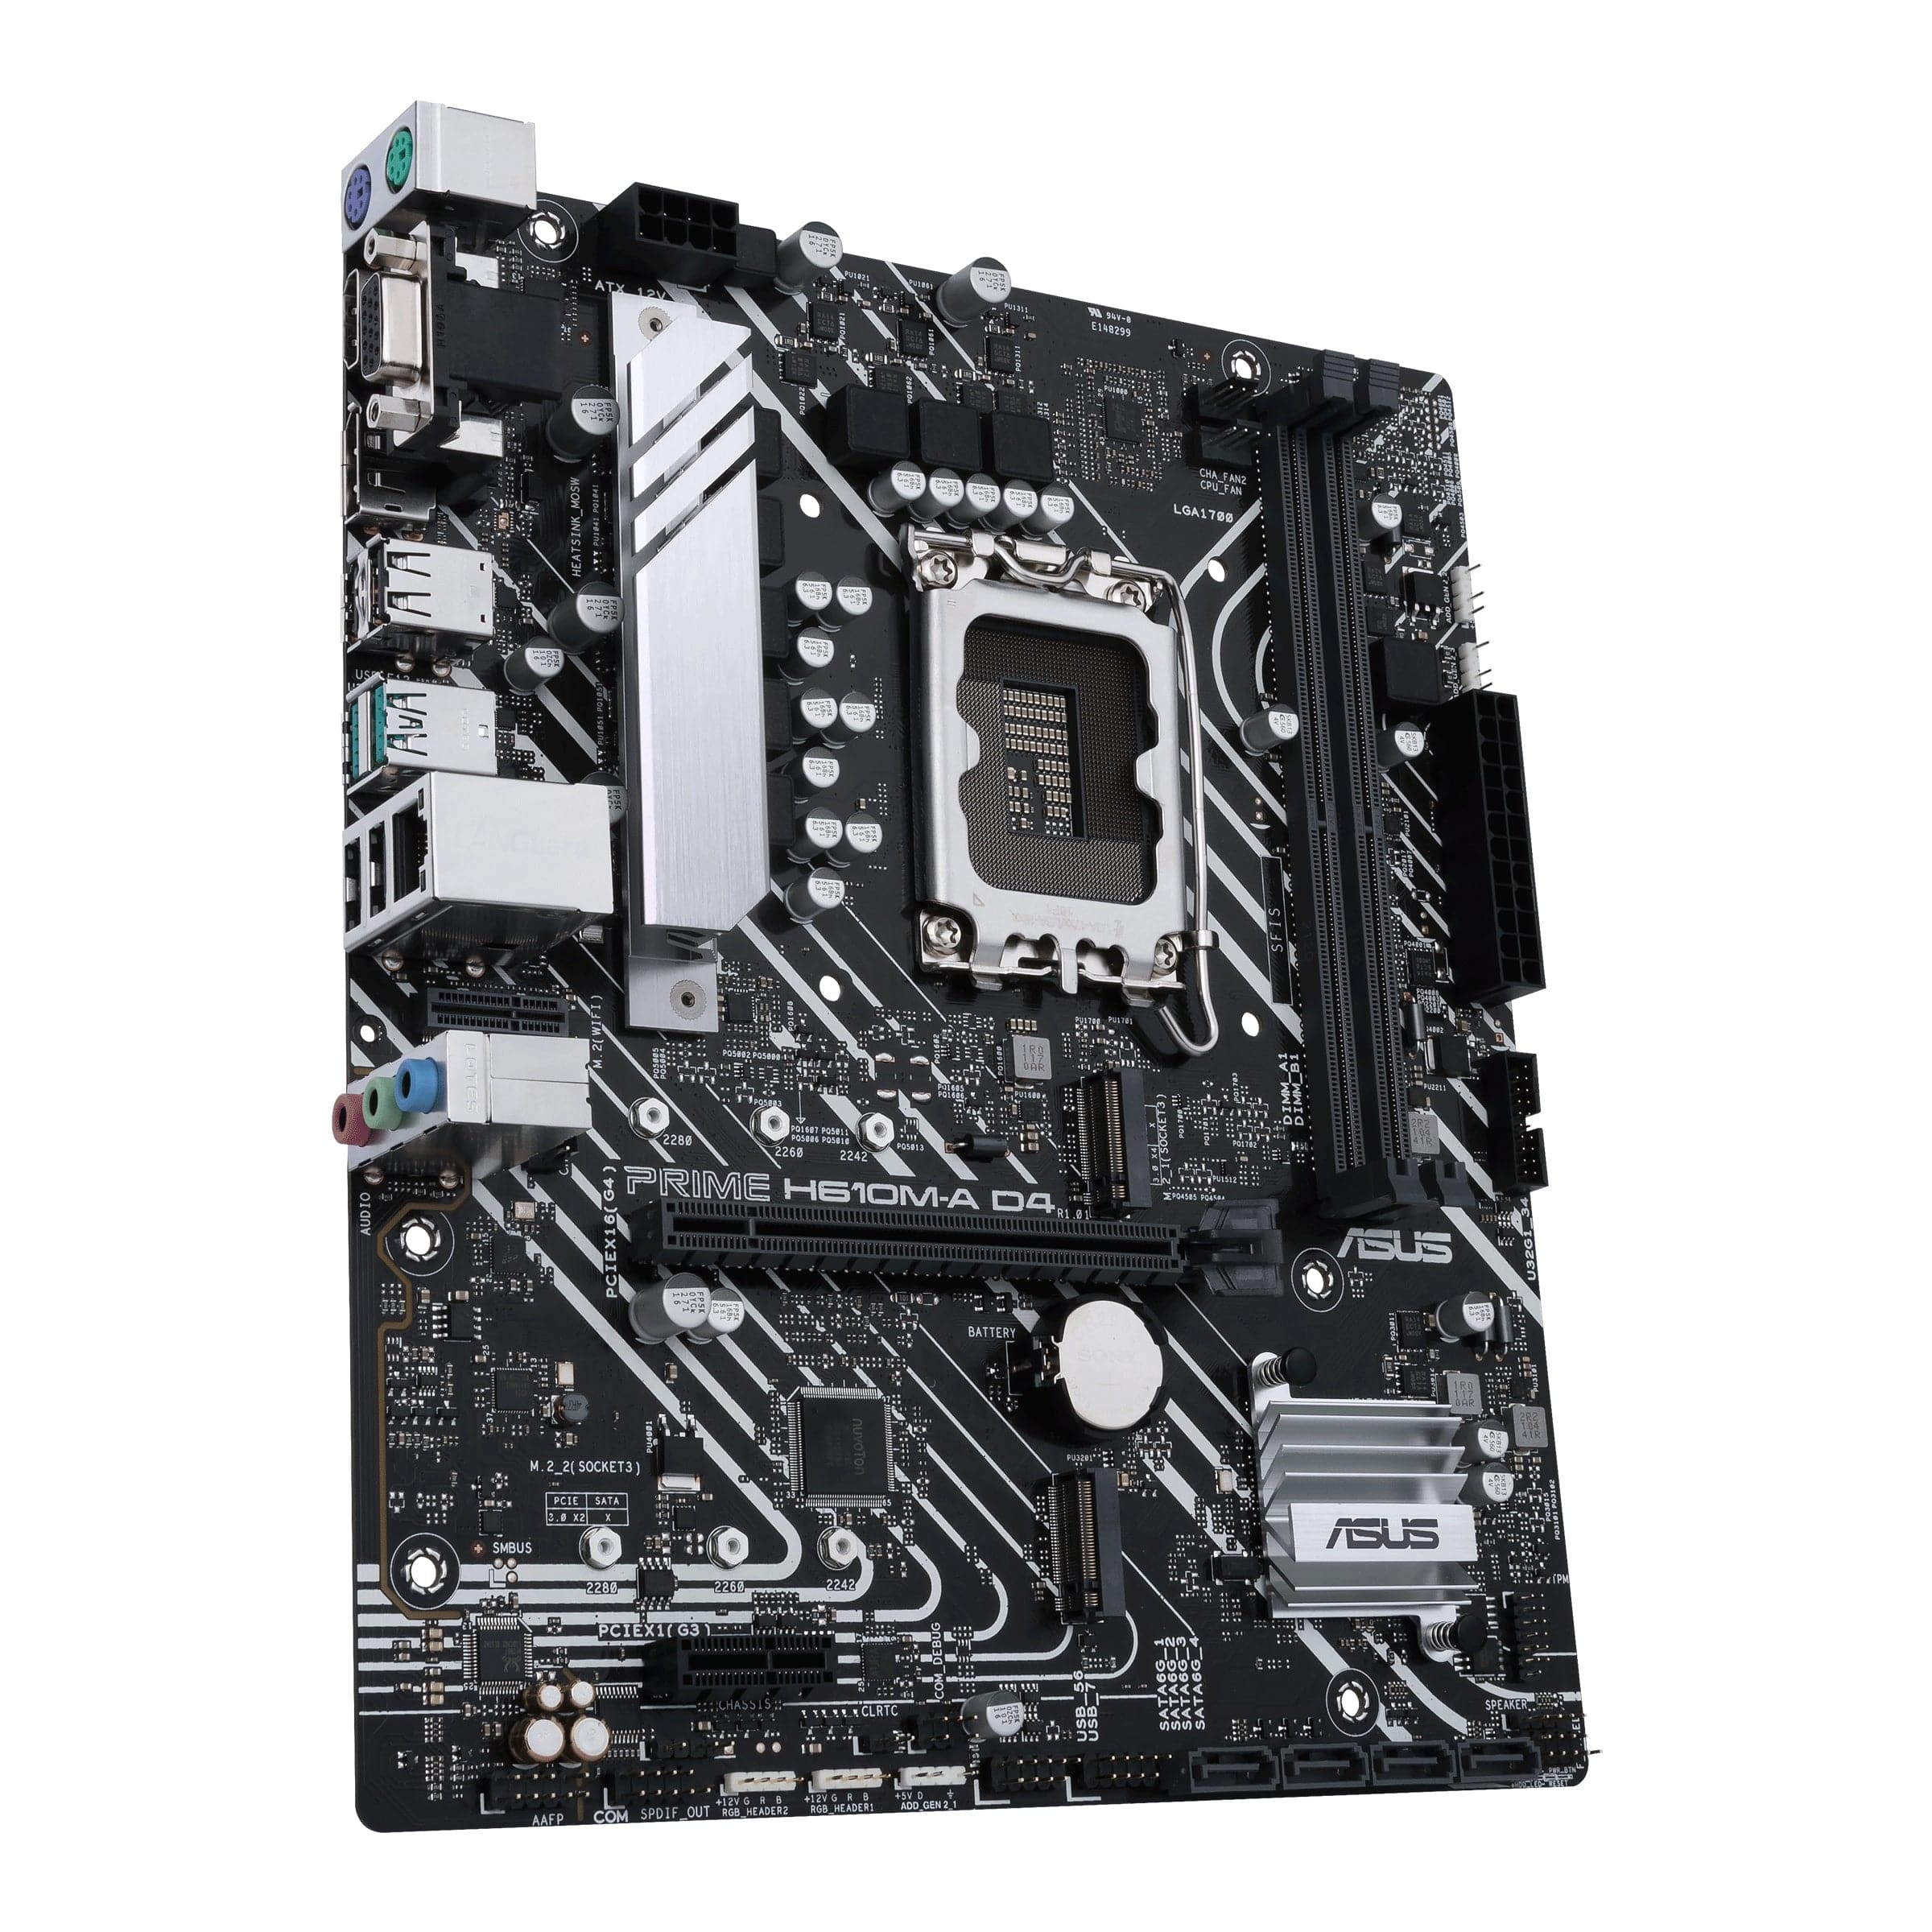 ASUS PRIME H610M-A D4 Micro-ATX LGA1700  Intel H610 Asus